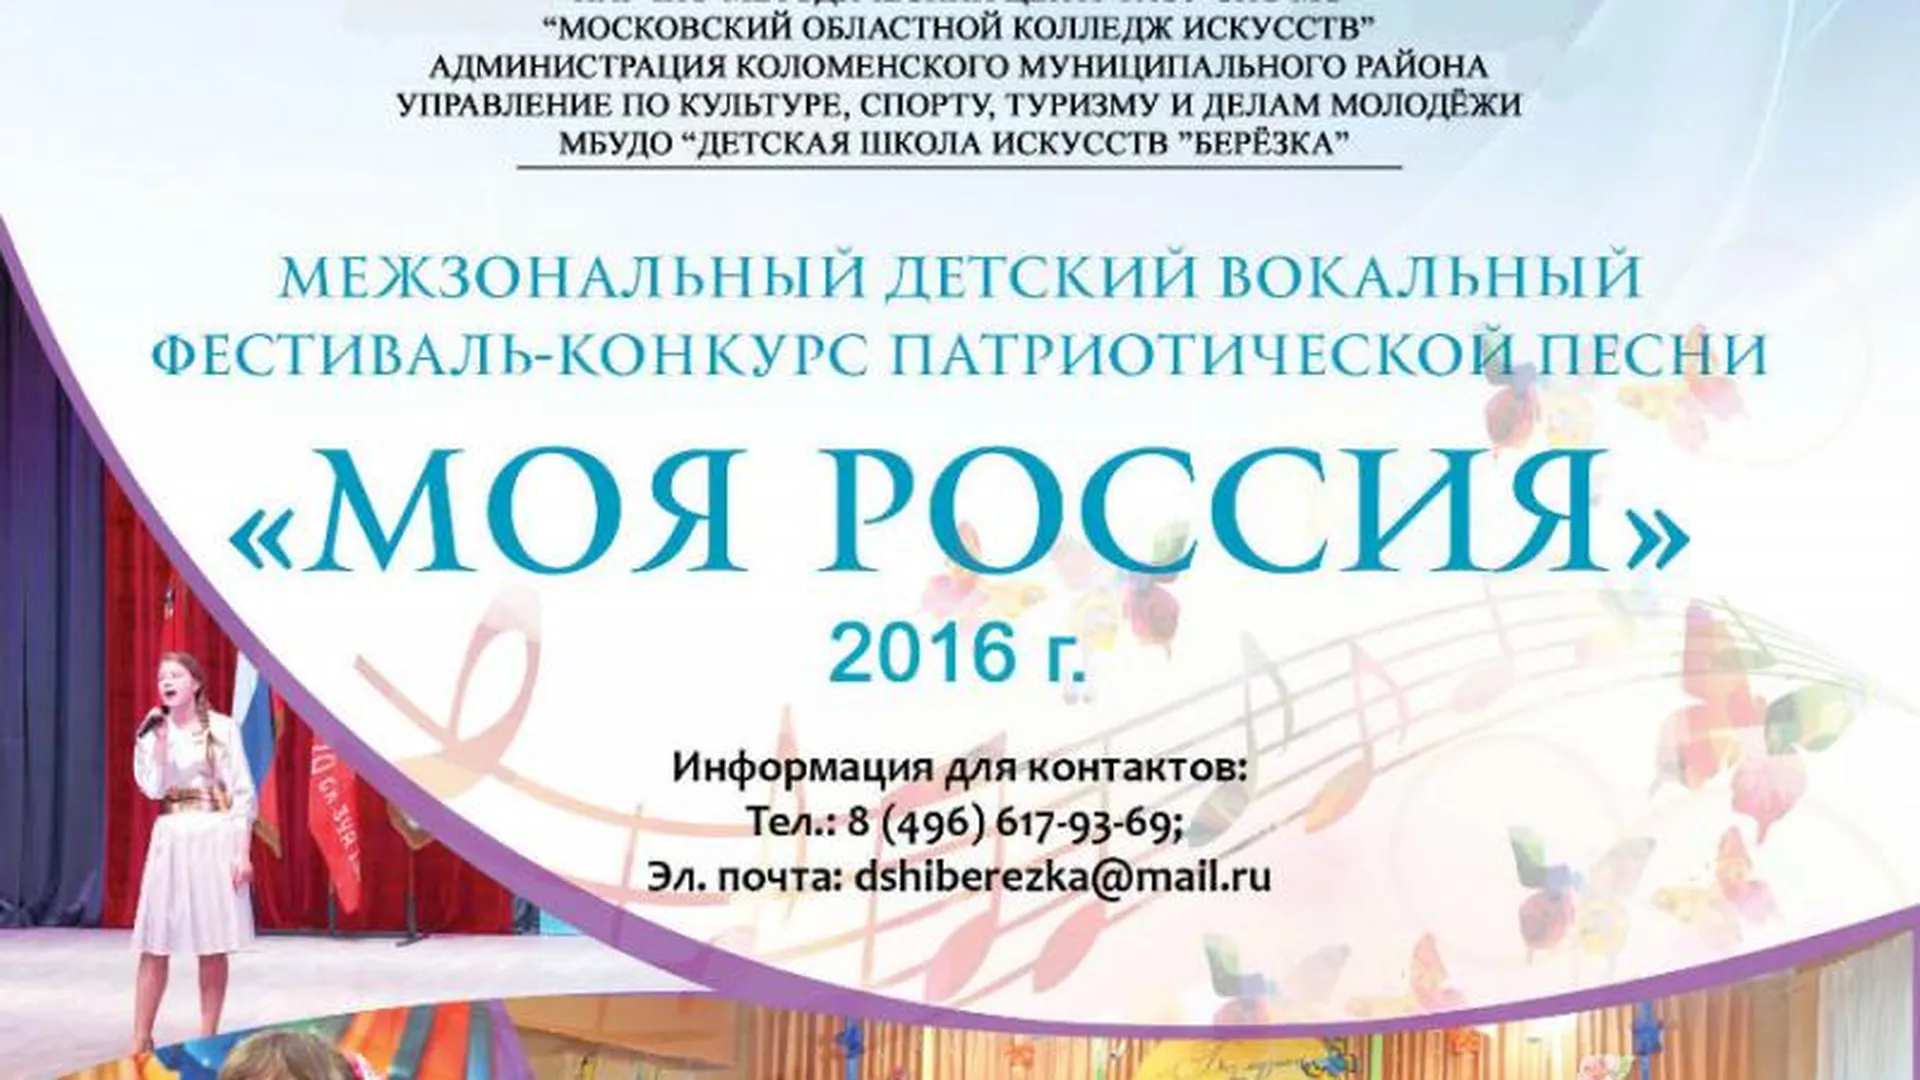 Детский фестиваль-конкурс патриотической песни «Моя Россия» пройдет в регионе